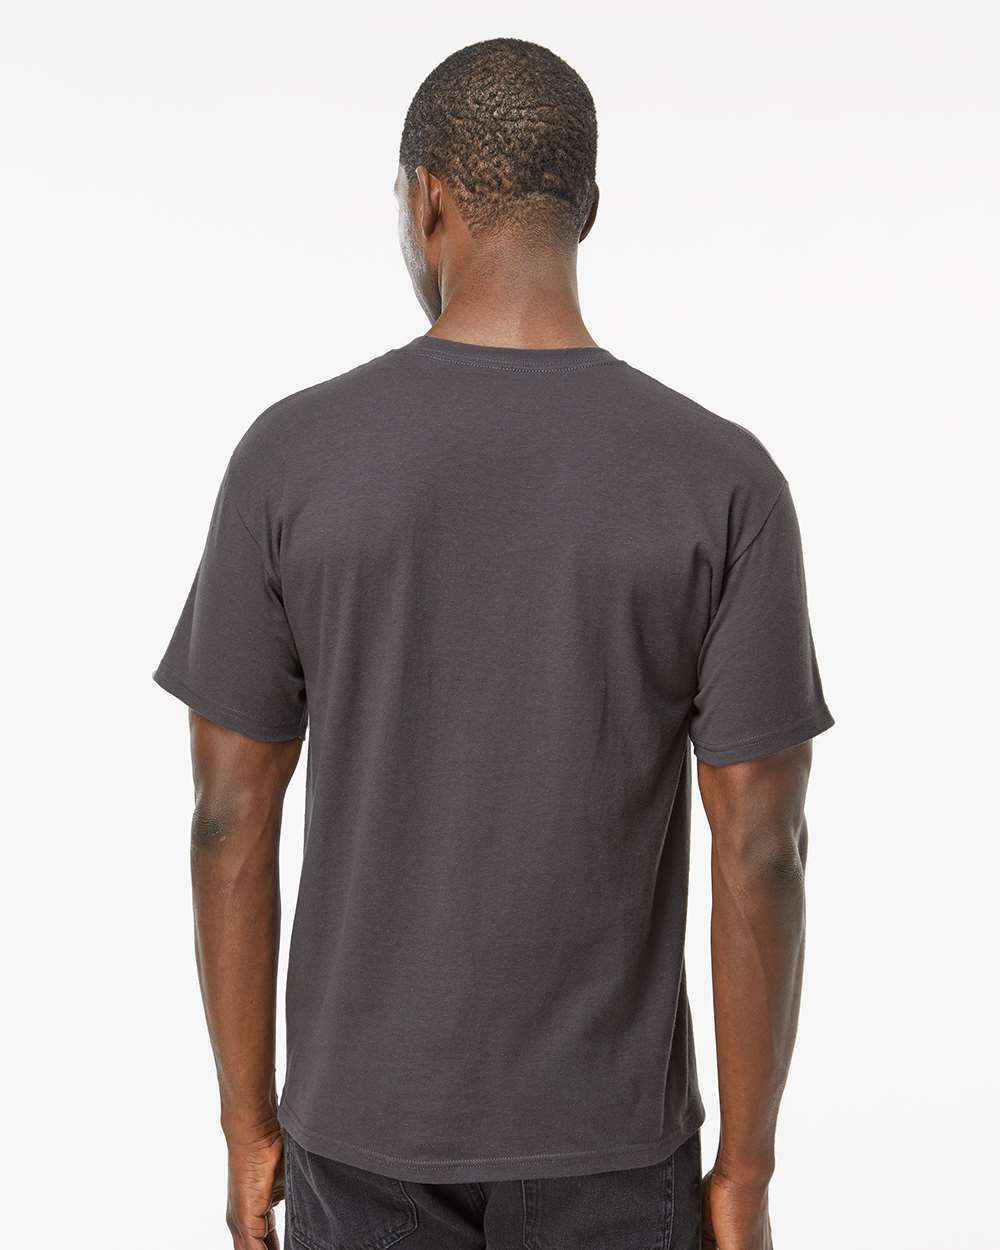 M&O Ring-Spun T-Shirt 5500 #colormdl_Charcoal